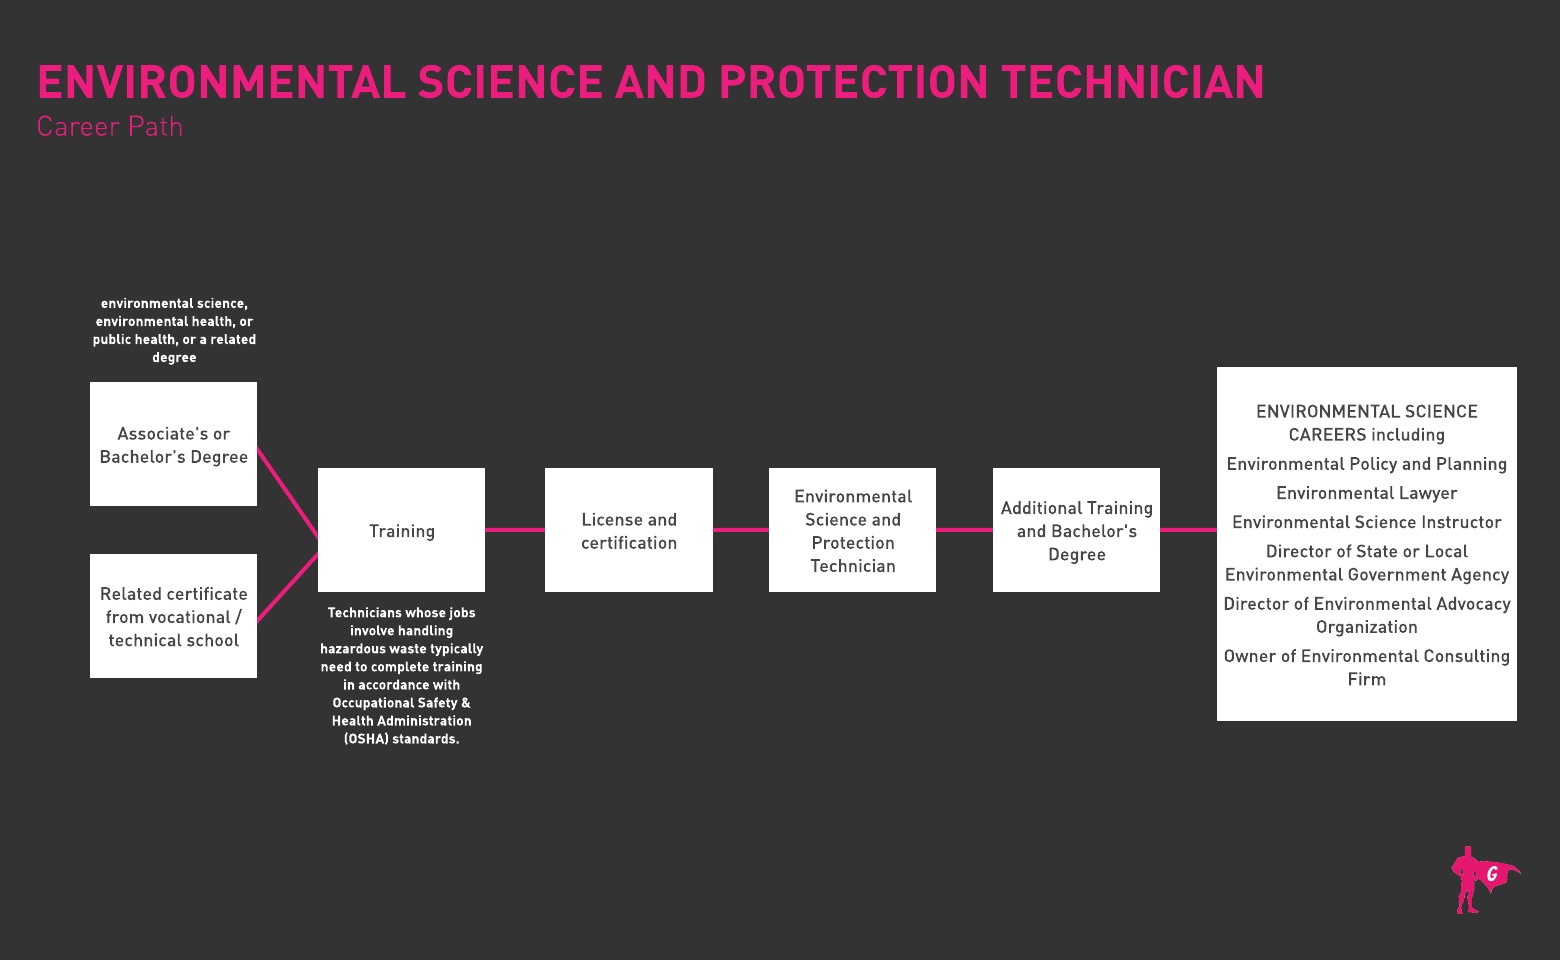 Gladeo 环境科学与保护技术员路线图